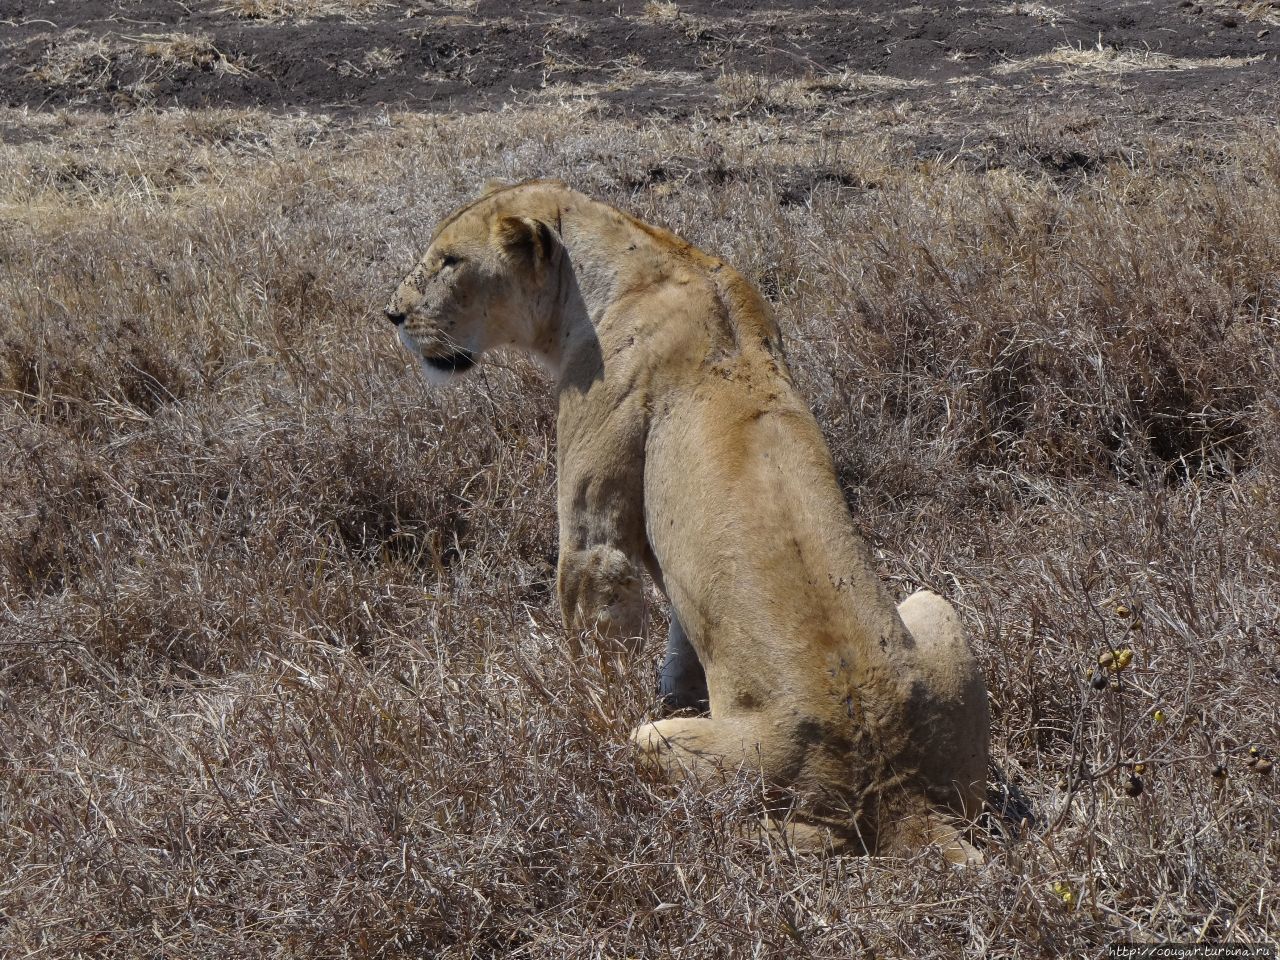 Львы вроде бы безразличны к машинам, но, к ужасу гида, реагируют на кис-кис. Нгоронгоро (заповедник в кратере вулкана), Танзания